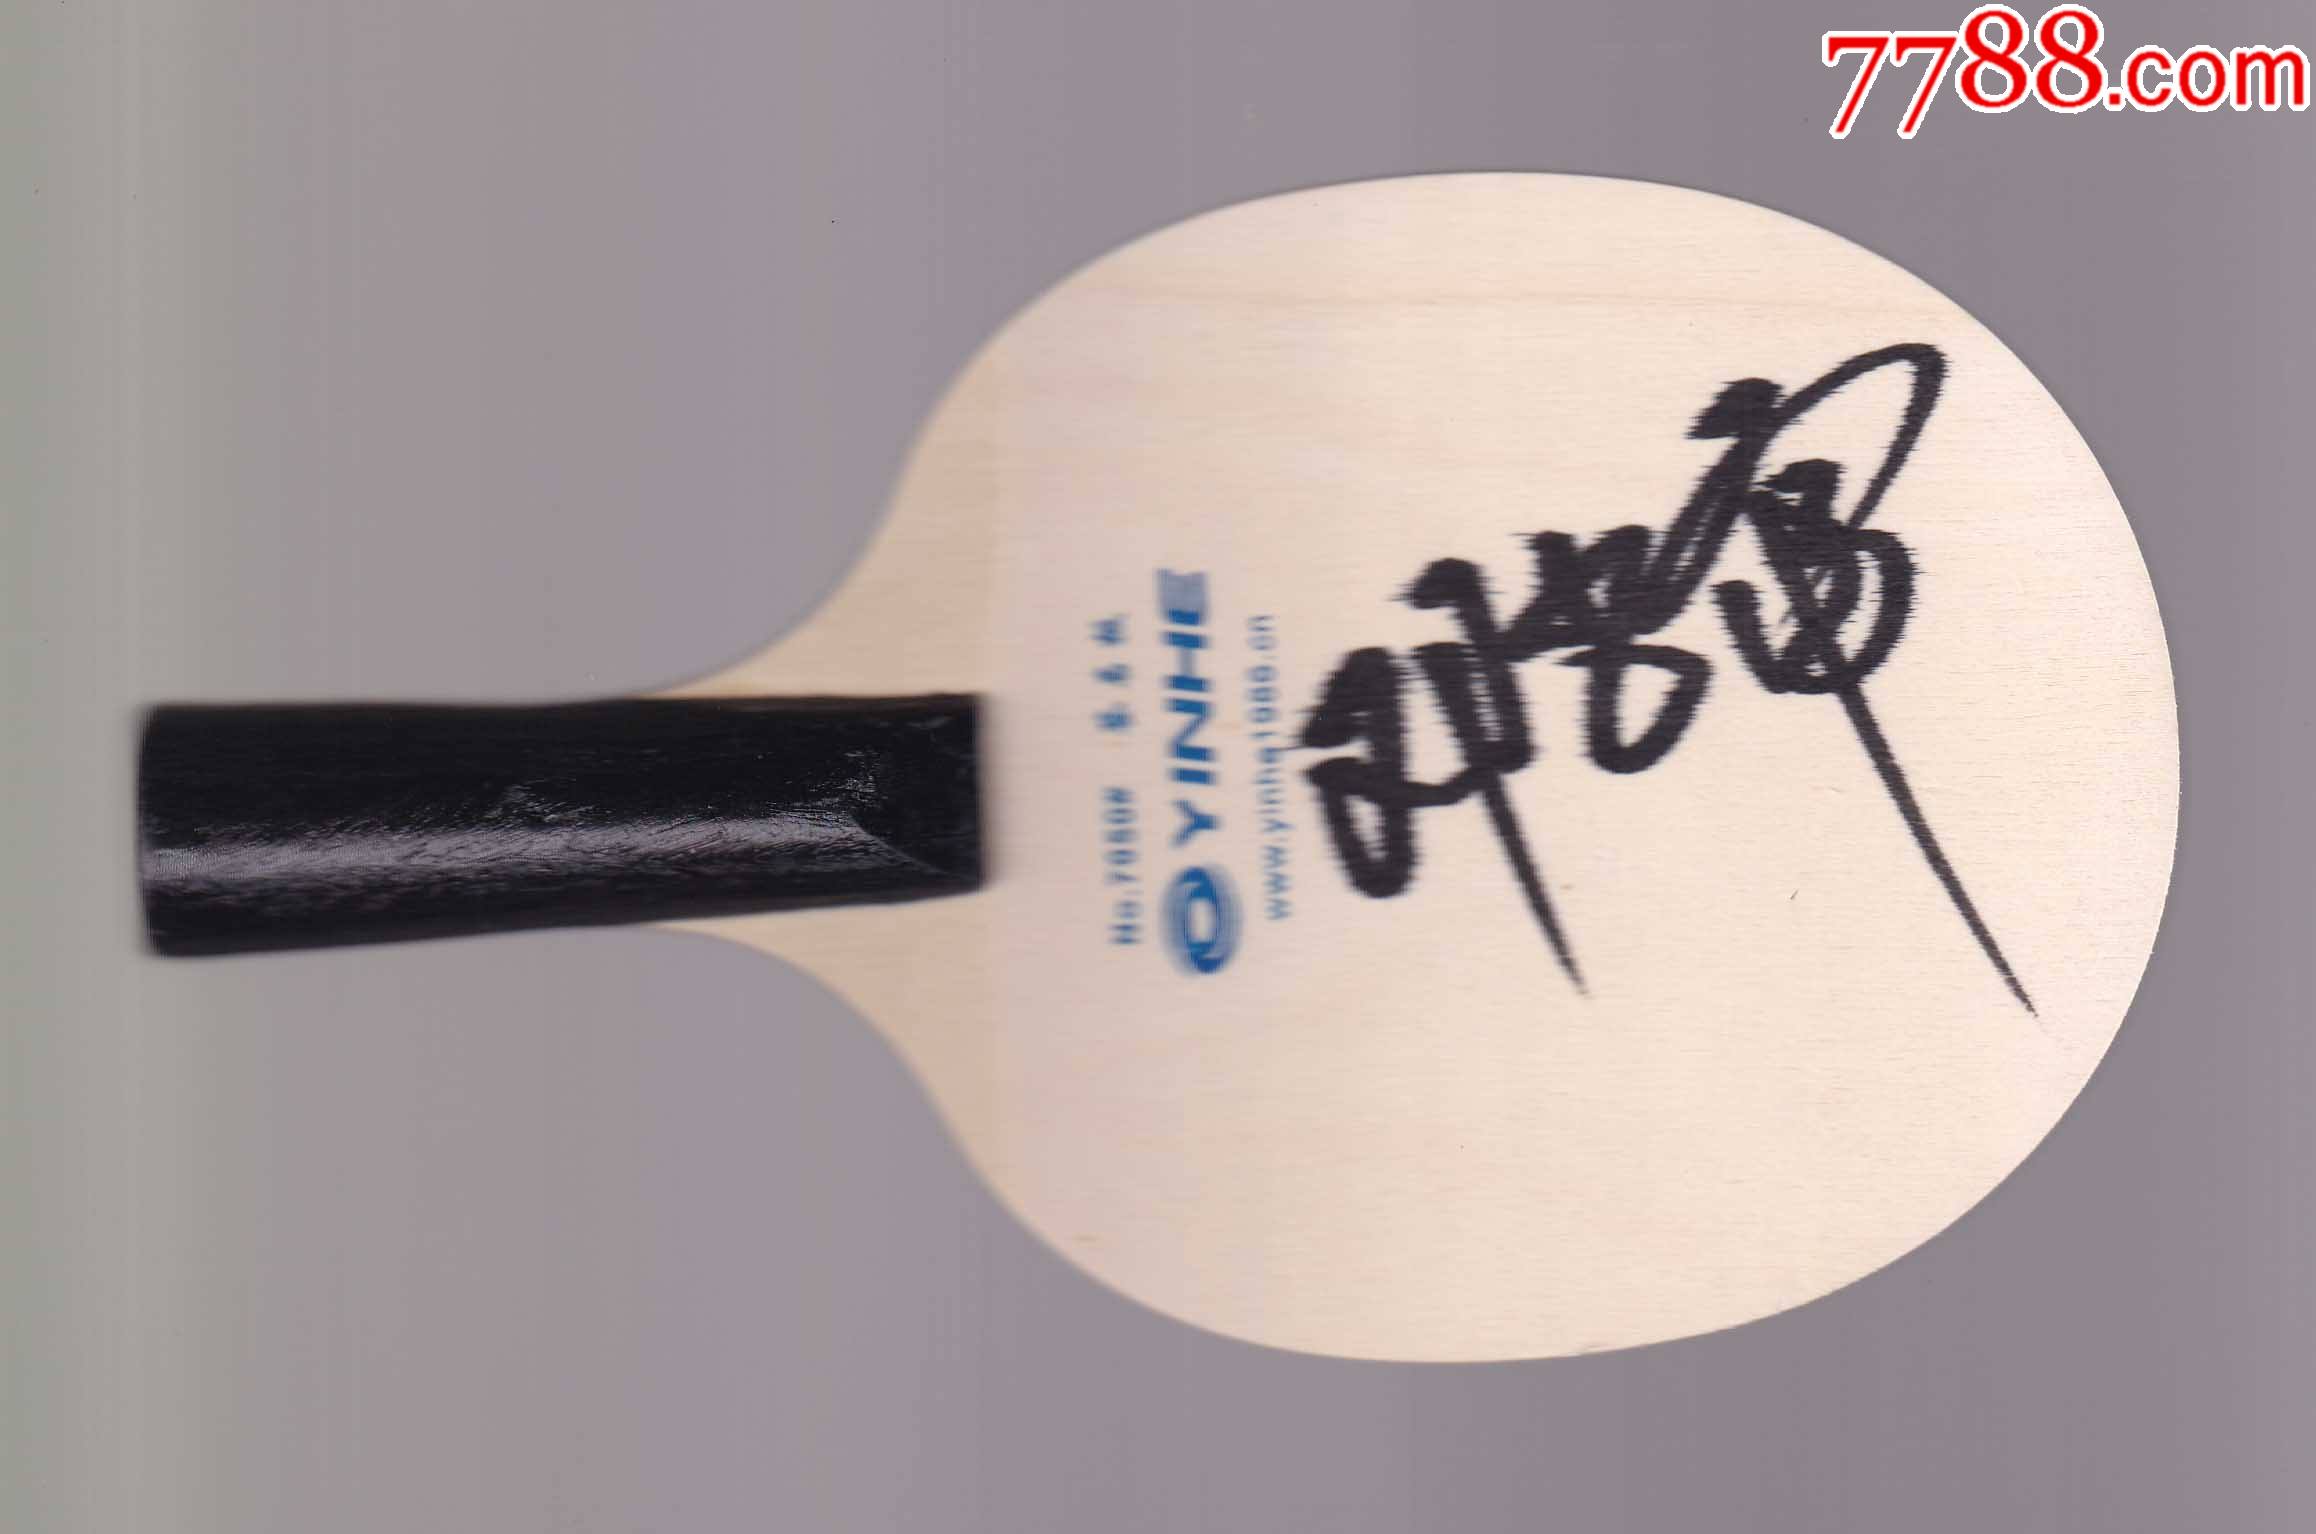 官方正品-正版乒乓球奥运冠军邓亚萍亲笔签名球拍-送礼佳品生日礼物